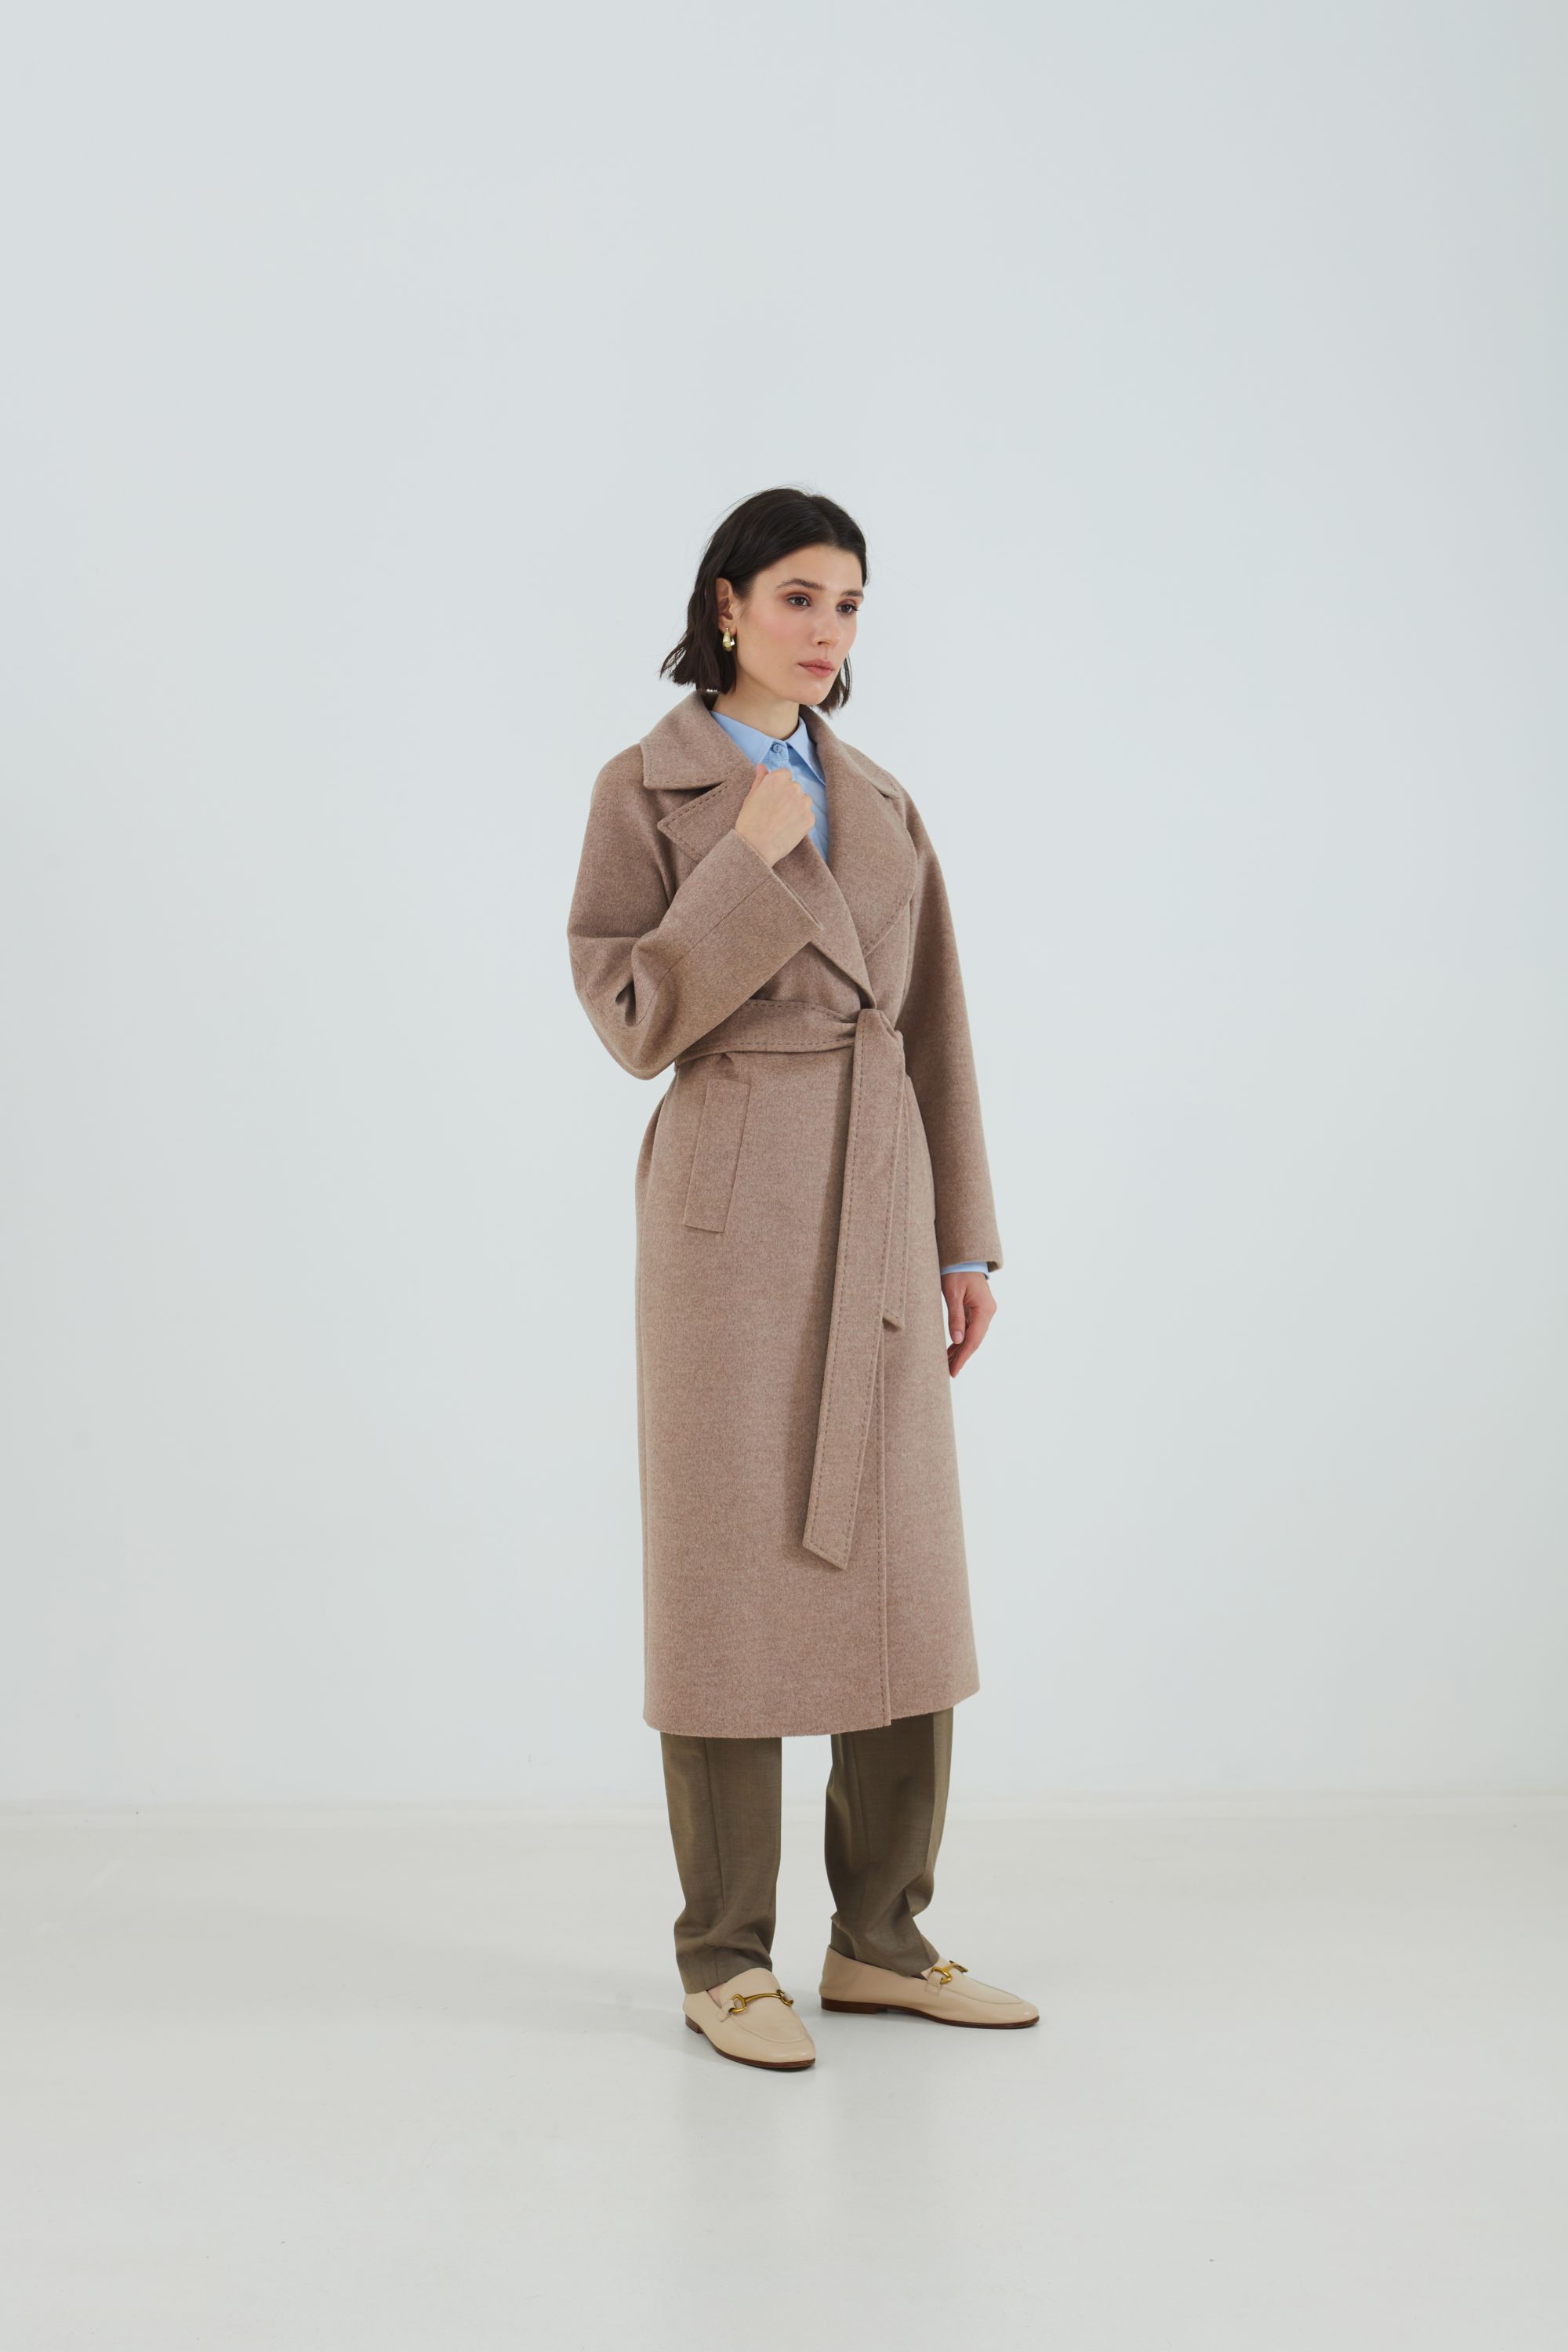 Пальто женское демисезонное 1-12542-1. Фото 2.